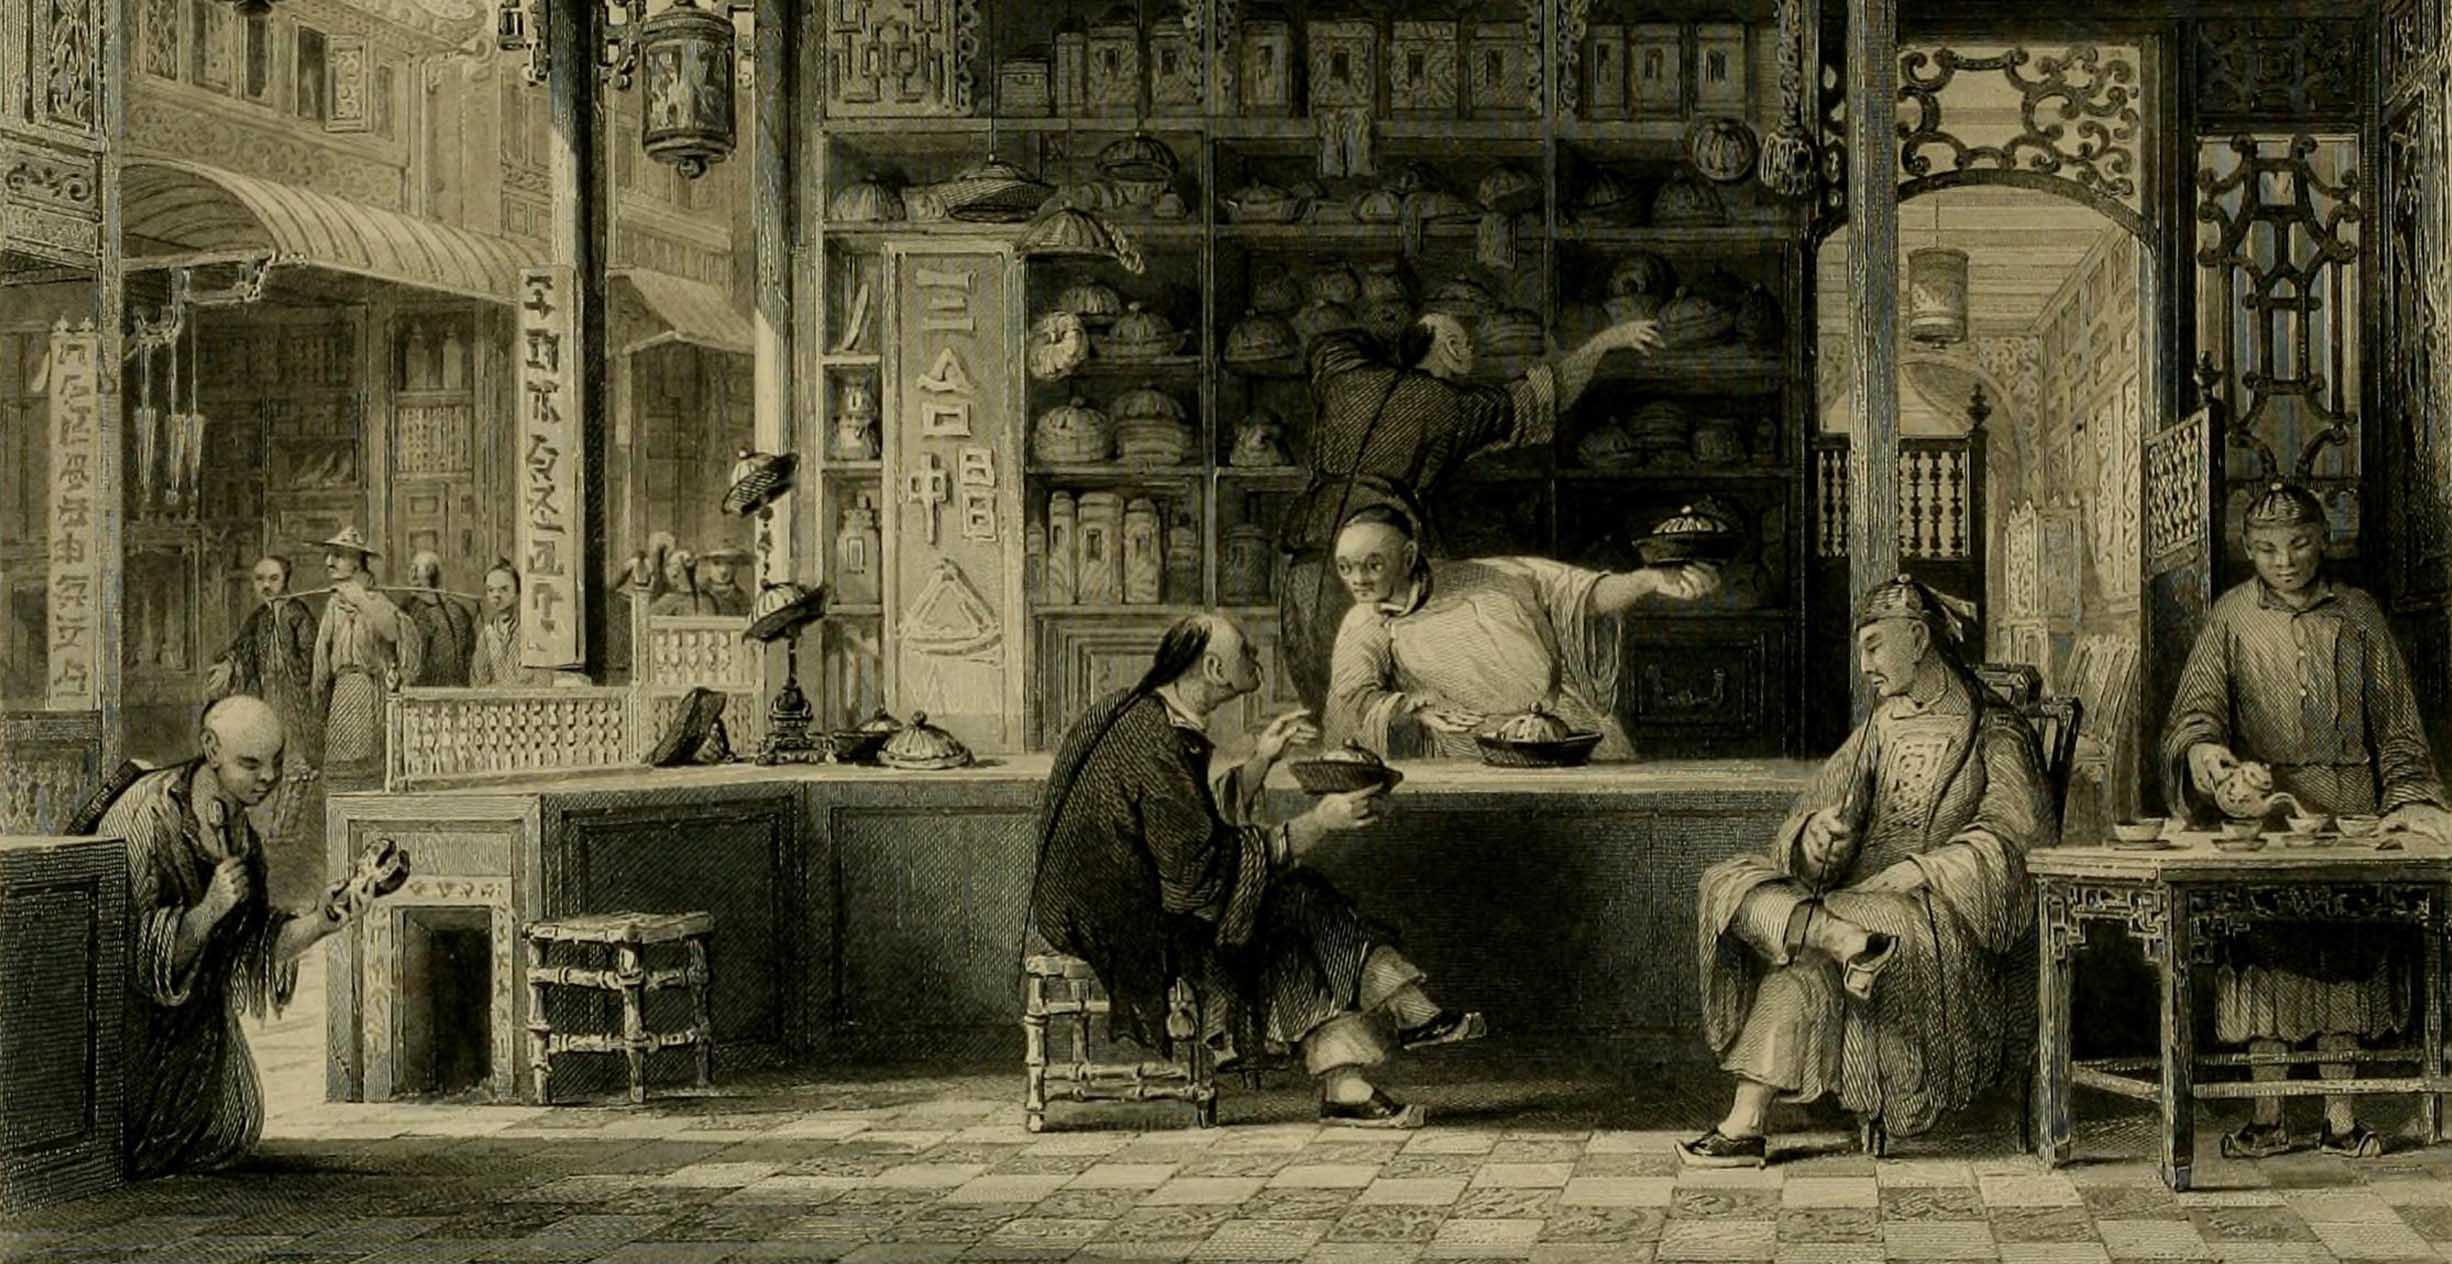 Illustration of customer at a hat shop, China